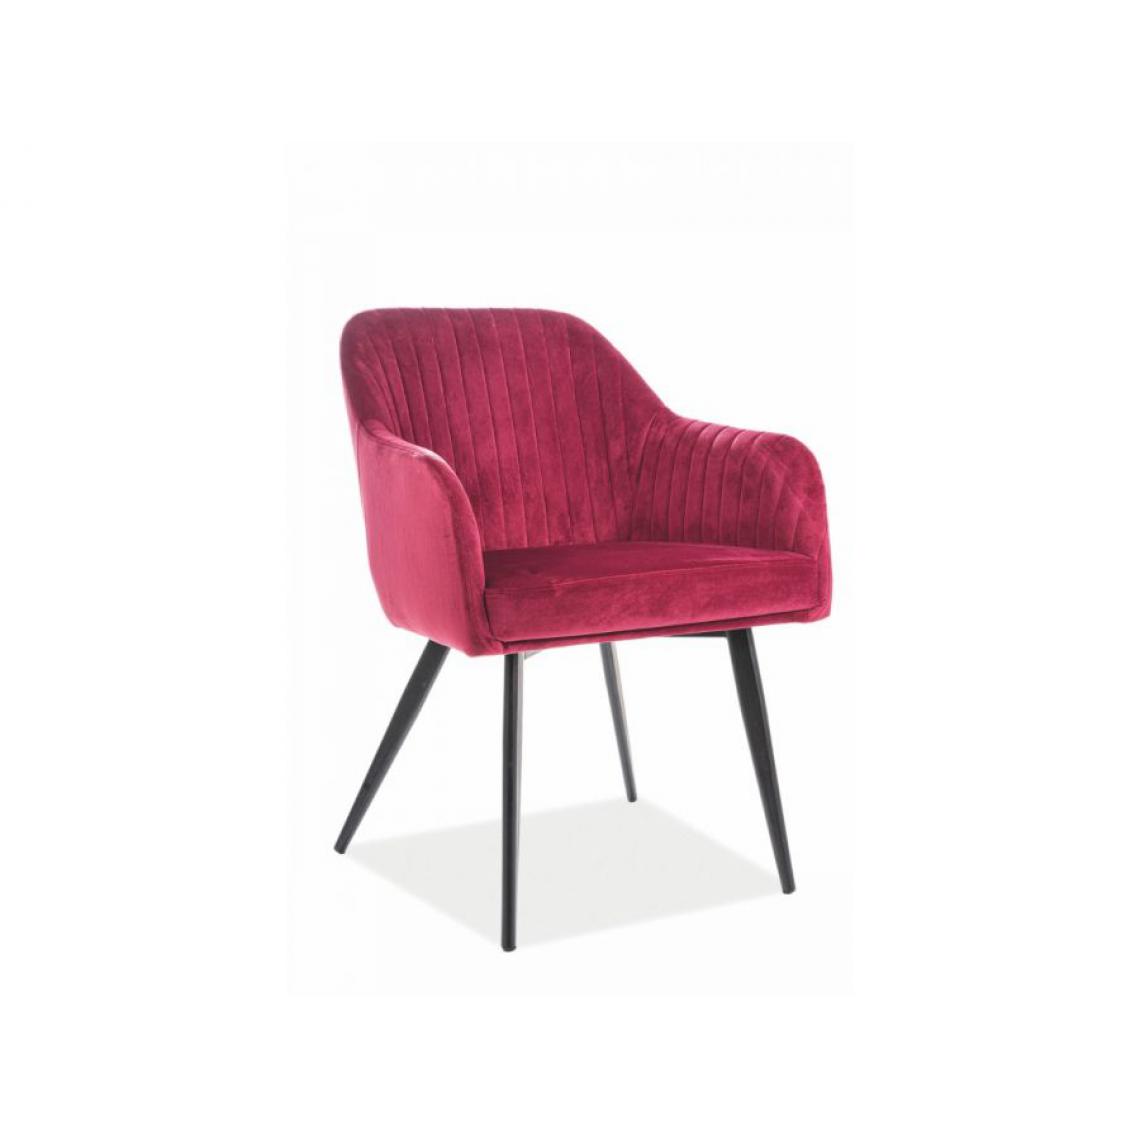 Hucoco - ELINE | Chaise matelassée avec pieds en métal | Dimensions : 82x48x47 cm | Rembourrage en velours | Design élégant - Bordeaux - Chaises